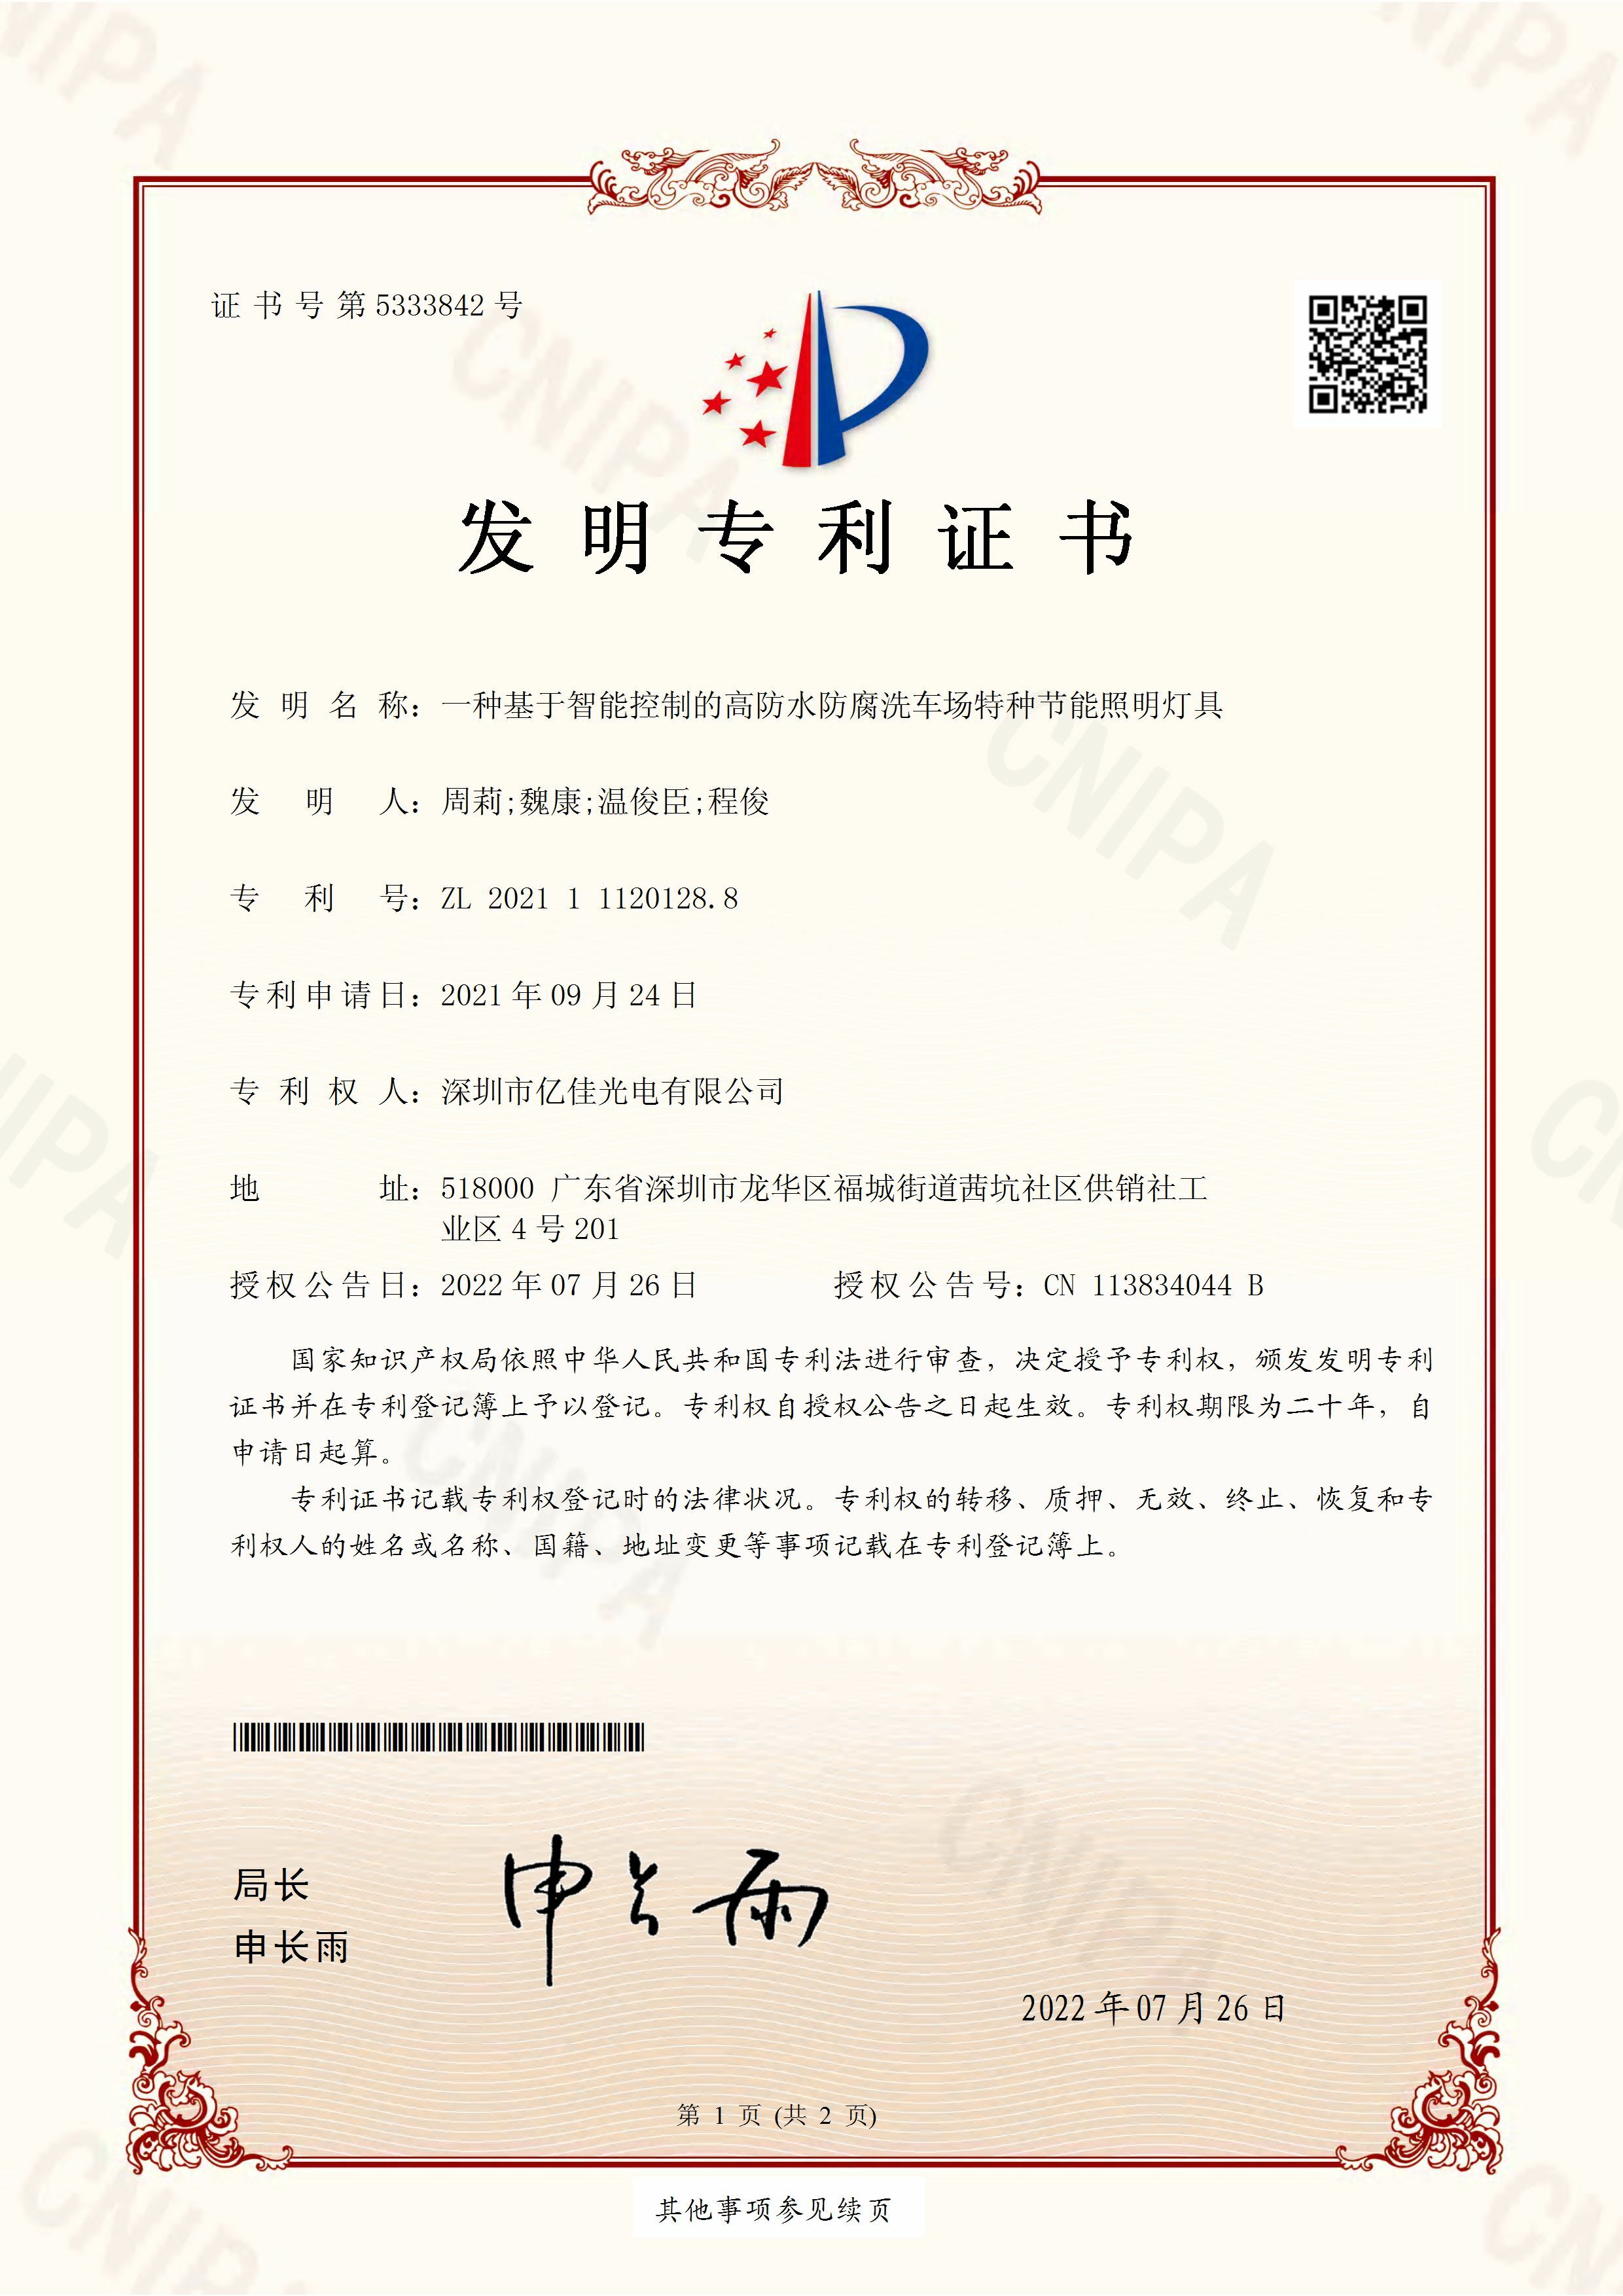 深圳市欧洲杯竞猜网站光电有限公司洗车场节能照明灯发明专利申请获得通过